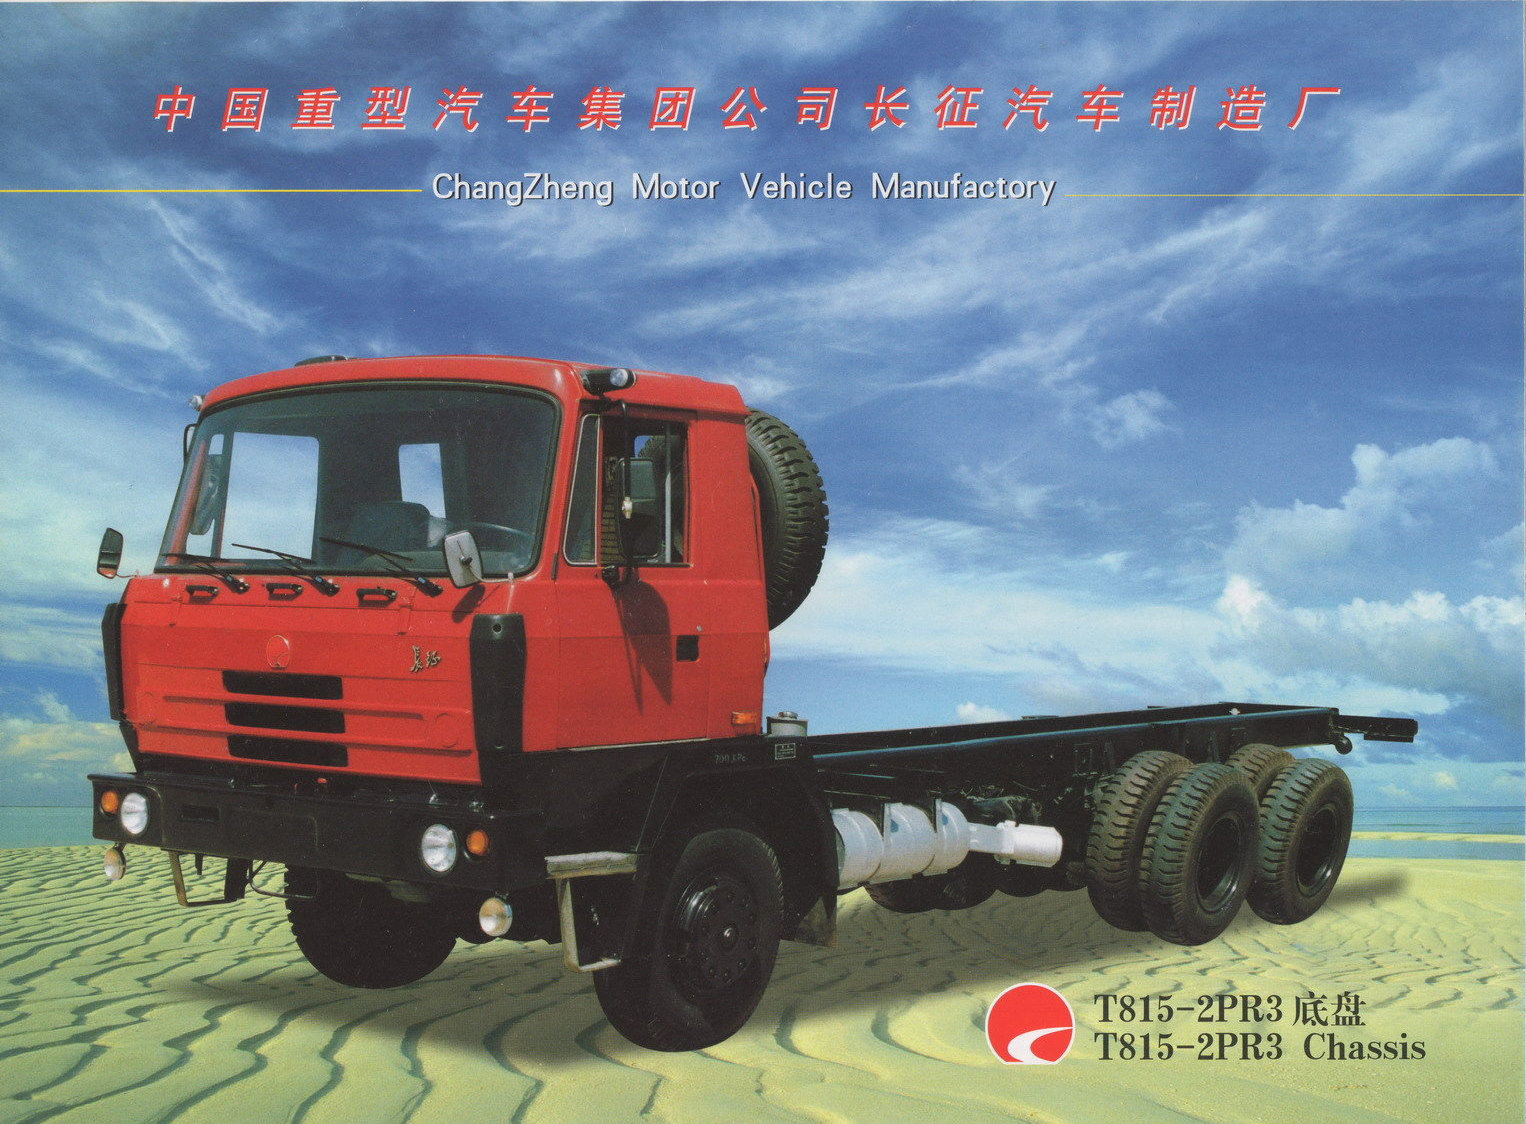 Brožura Changzheng z roku 2000